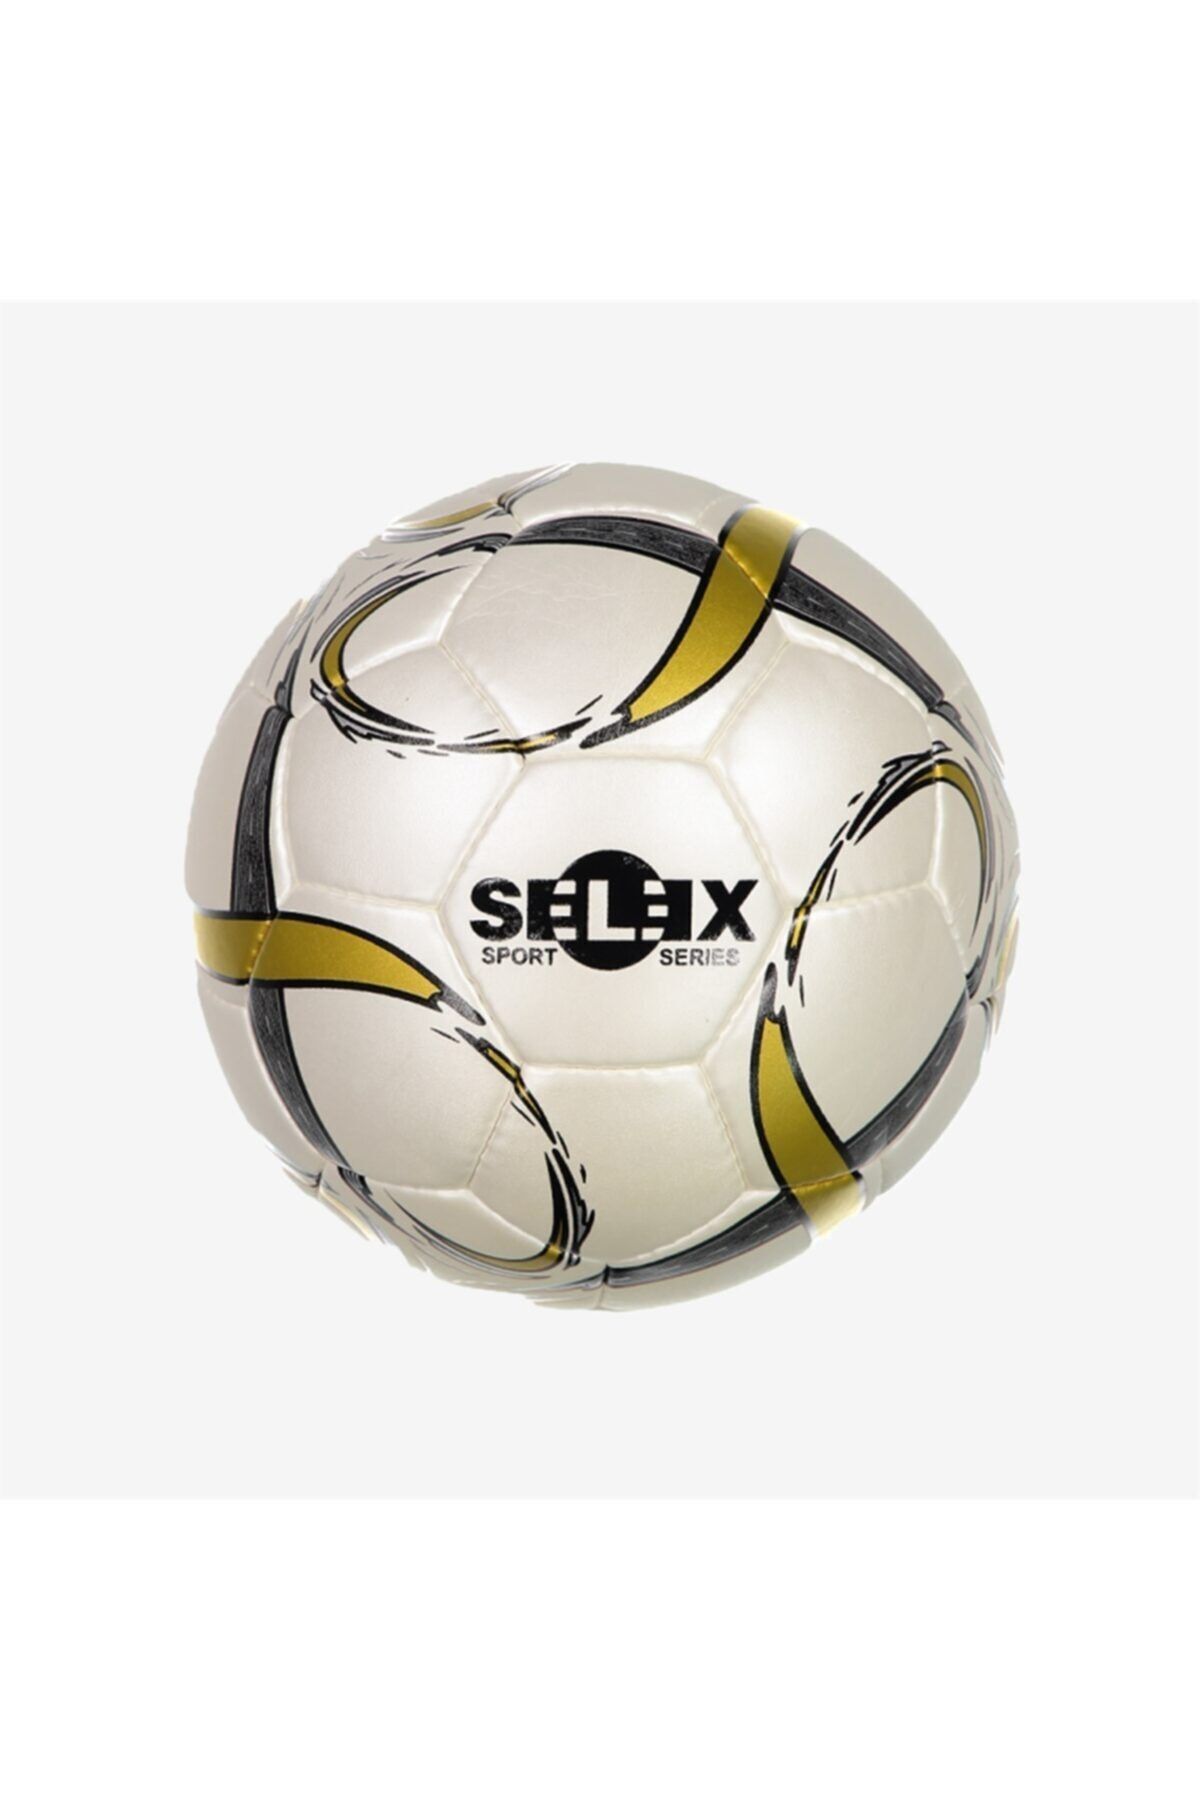 SELEX Futbol Topu Progold Futbol Futbol Topu